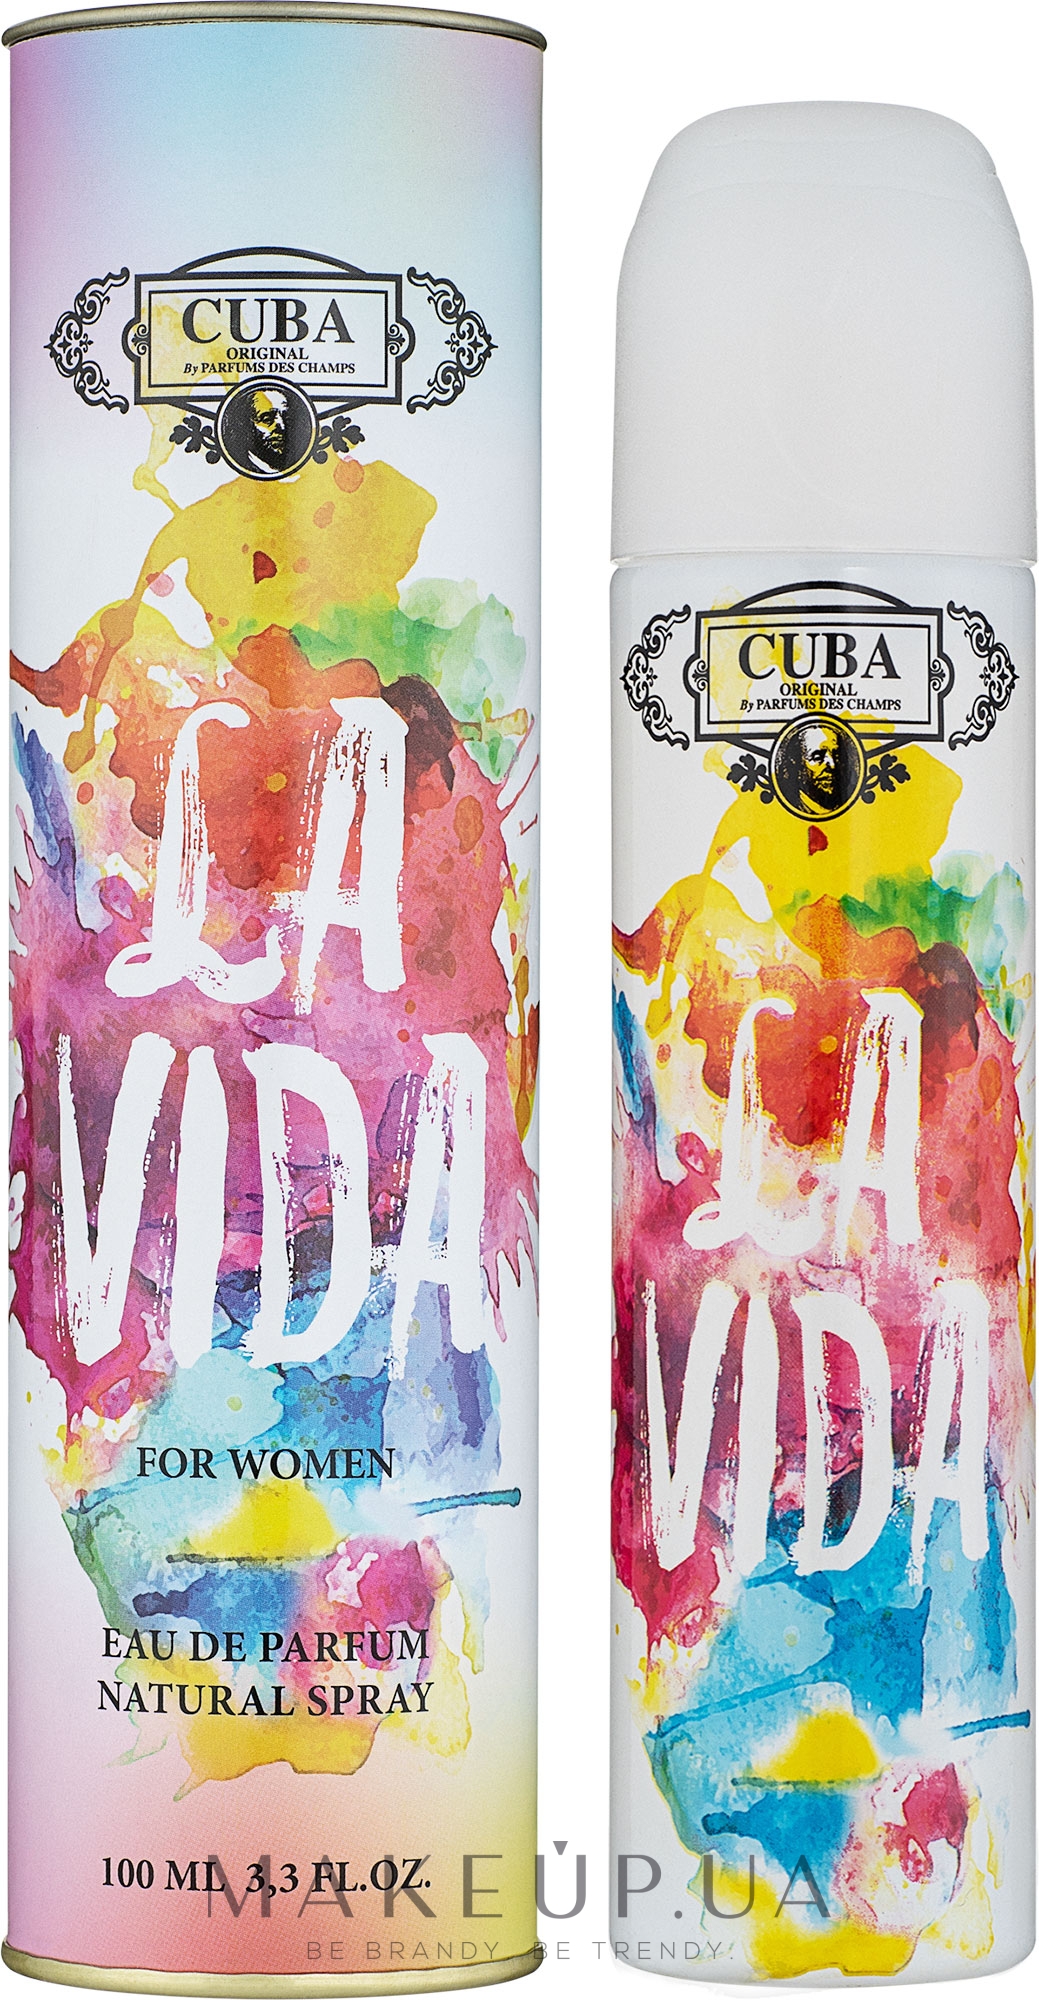 Cuba La Vida For Women - Парфюмированная вода — фото 100ml